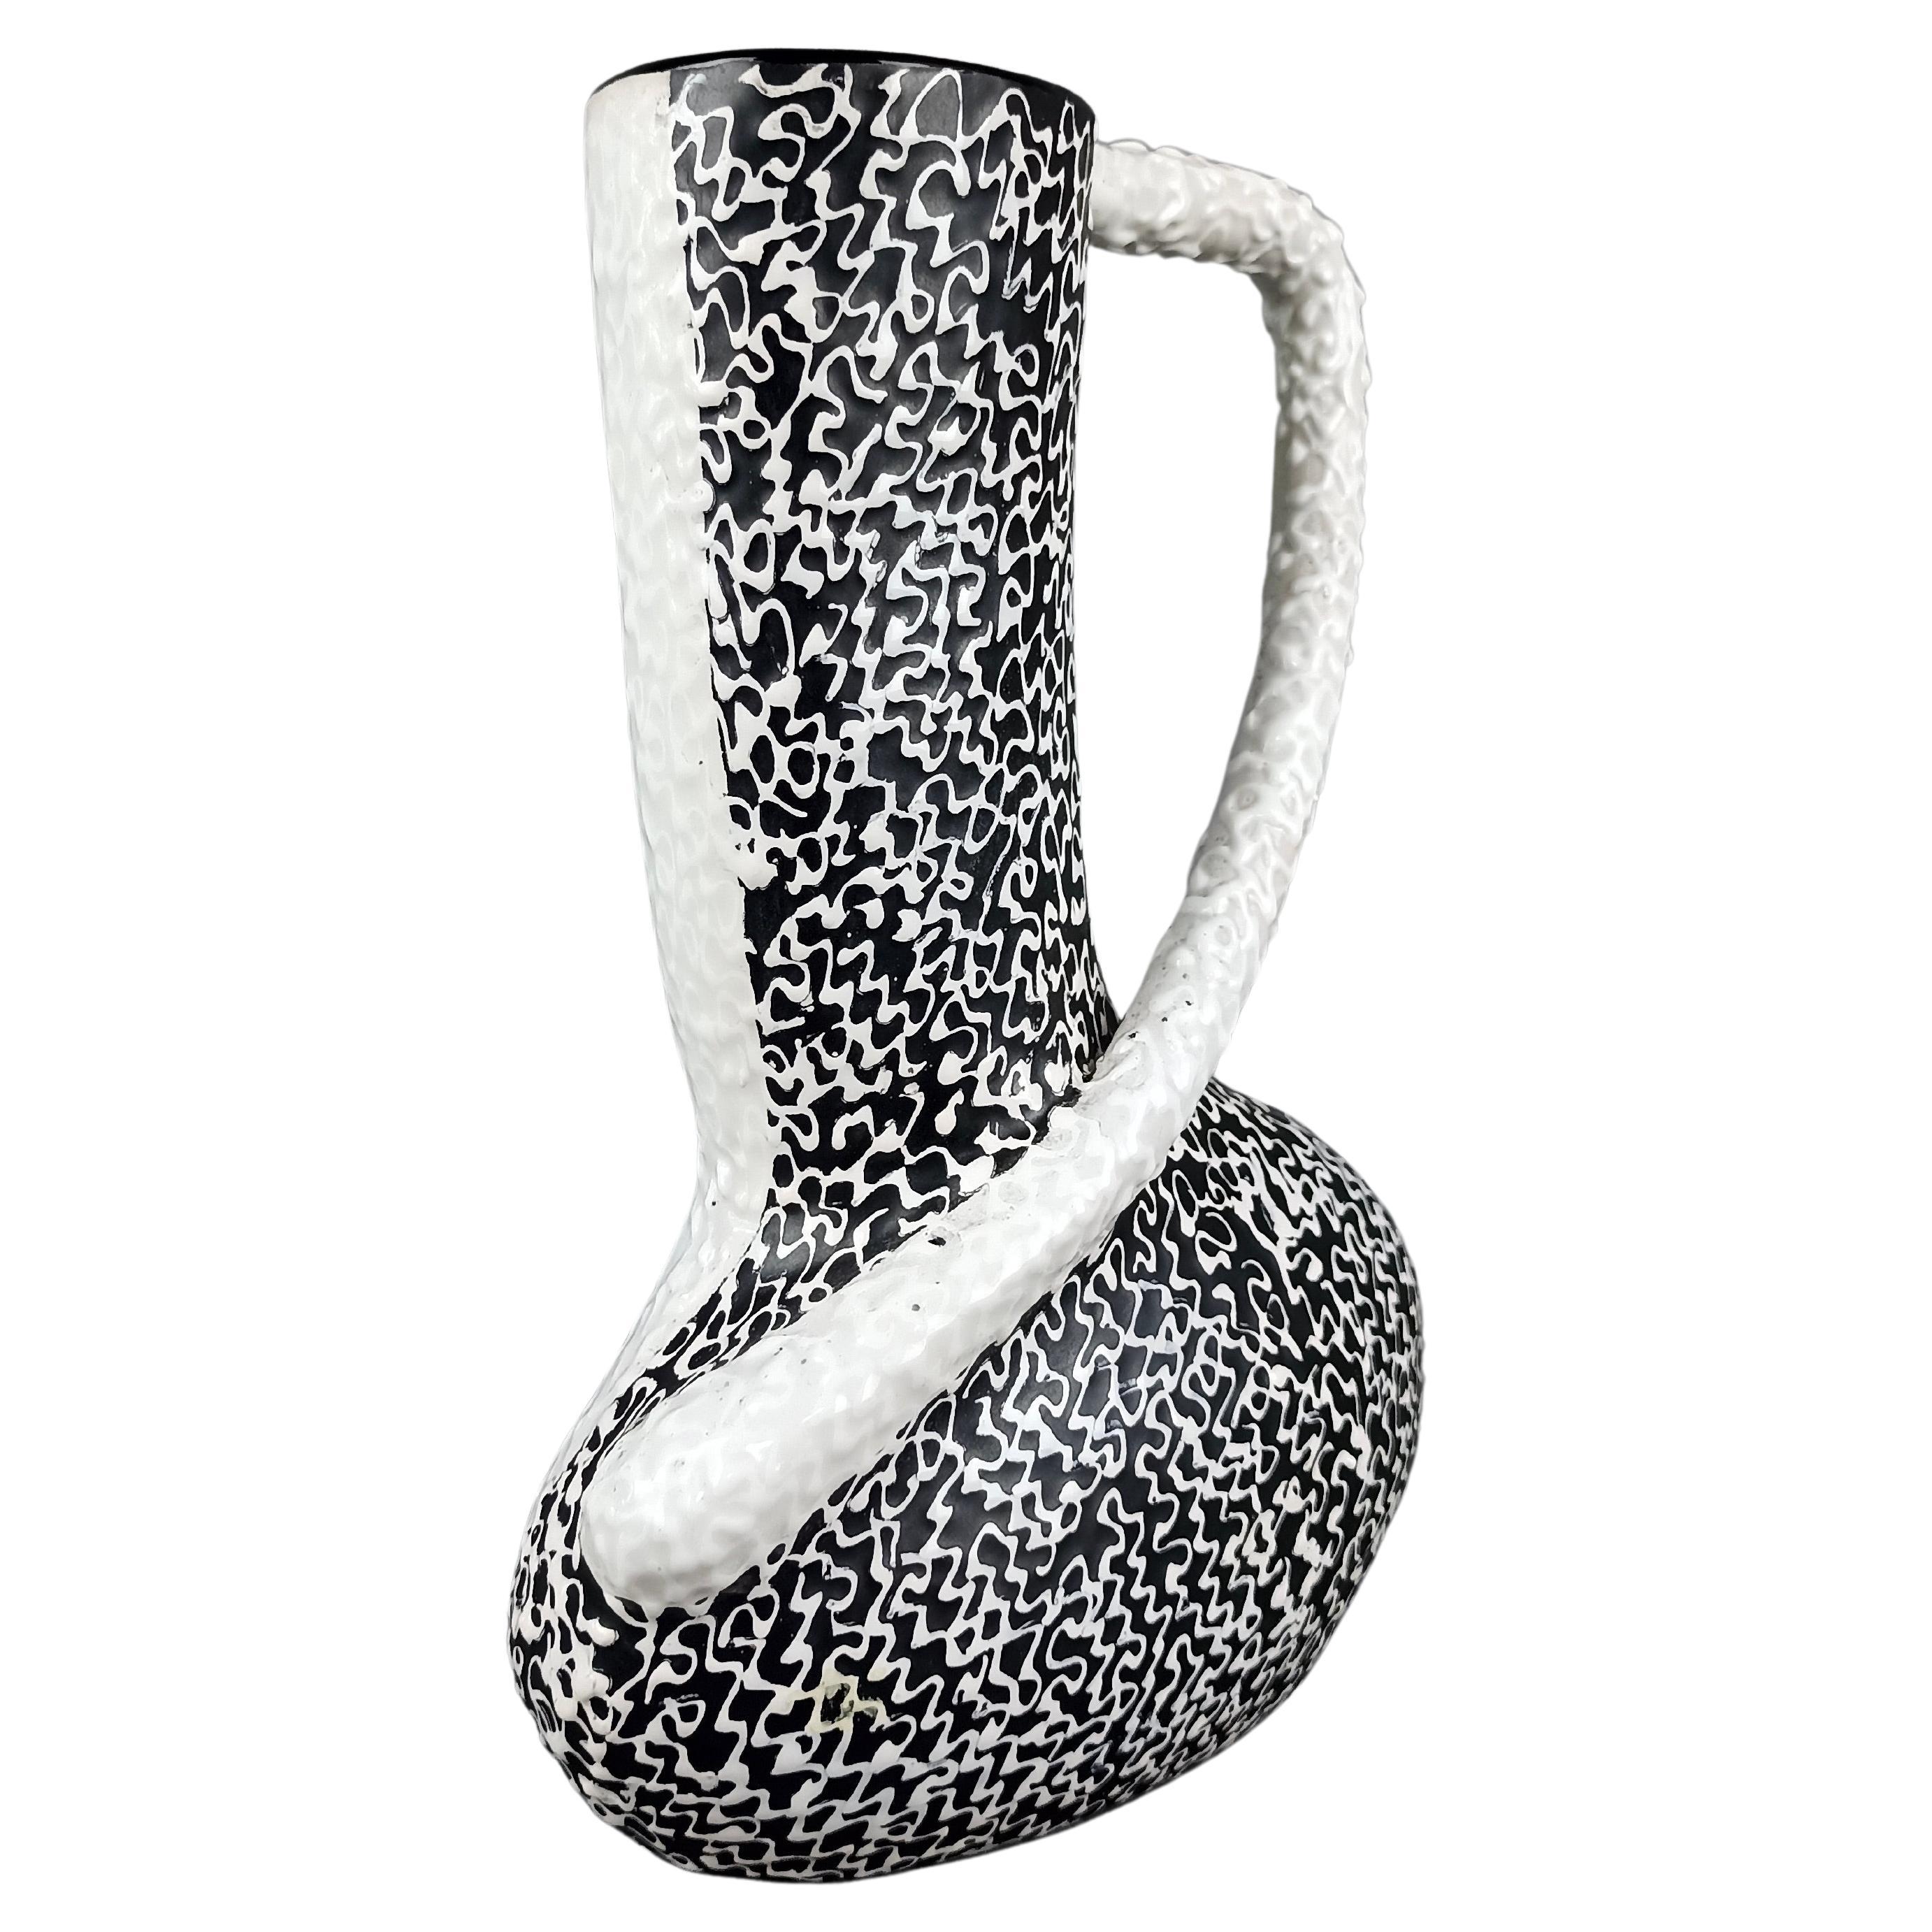 Vase asymétrique en céramique noir et blanc des années 1950 de la société italienne Whiting Deruta.